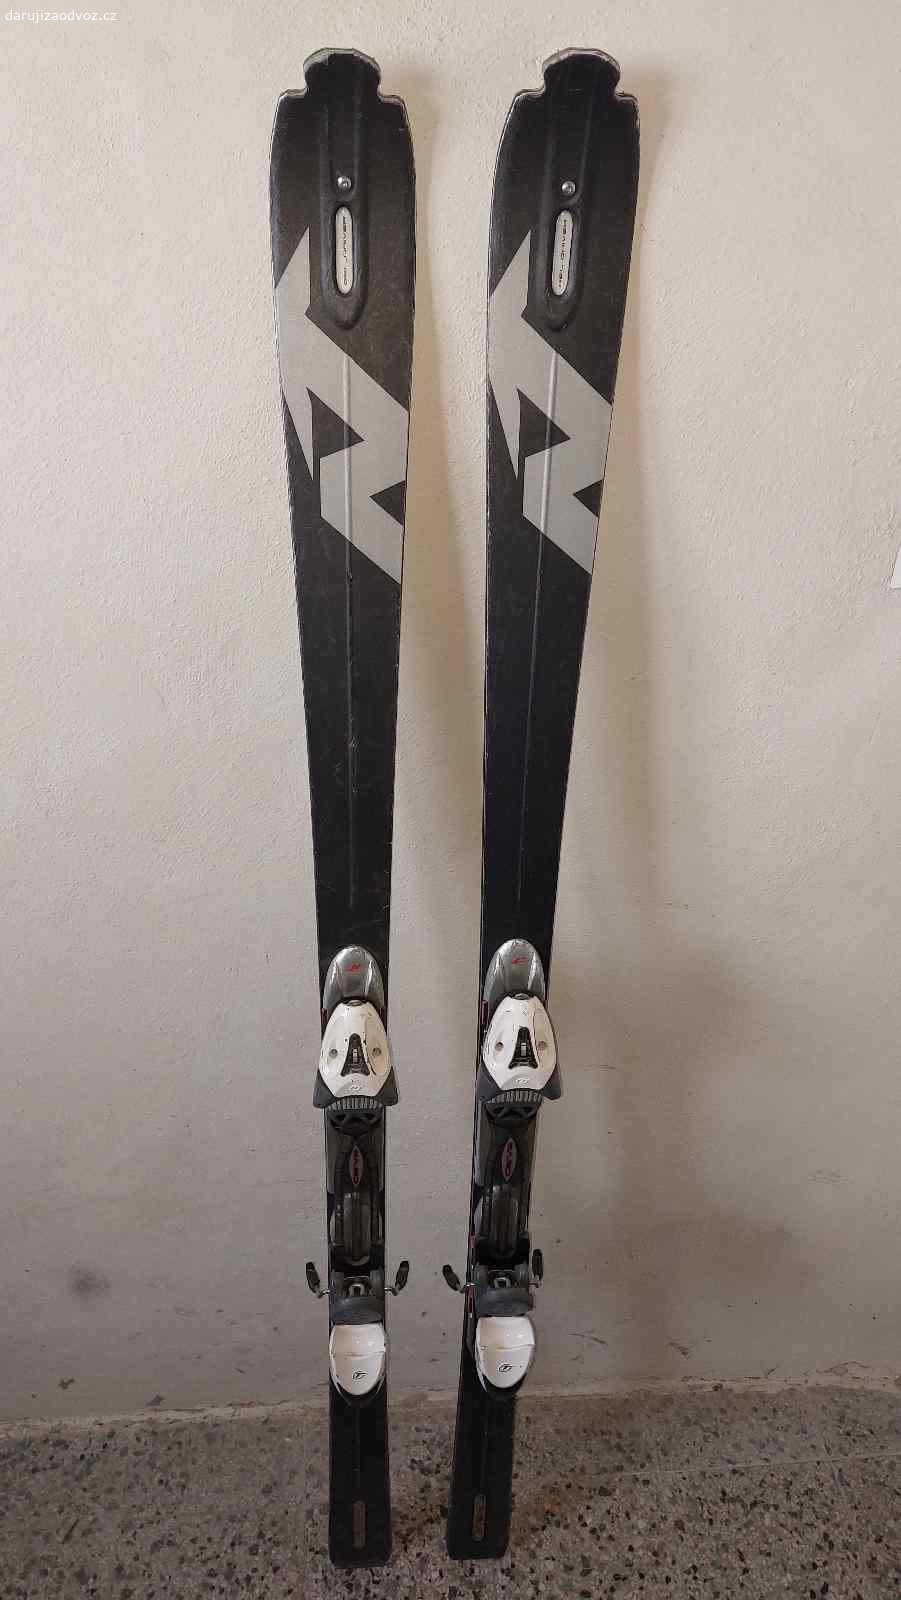 lyže Nordica 175 cm - ZAMLUVENO. Lyže Nordica 175 cm - dřevěné jádra, velmi tvrdé pro pokročilejšího lyžaře. Běžné známky používání.